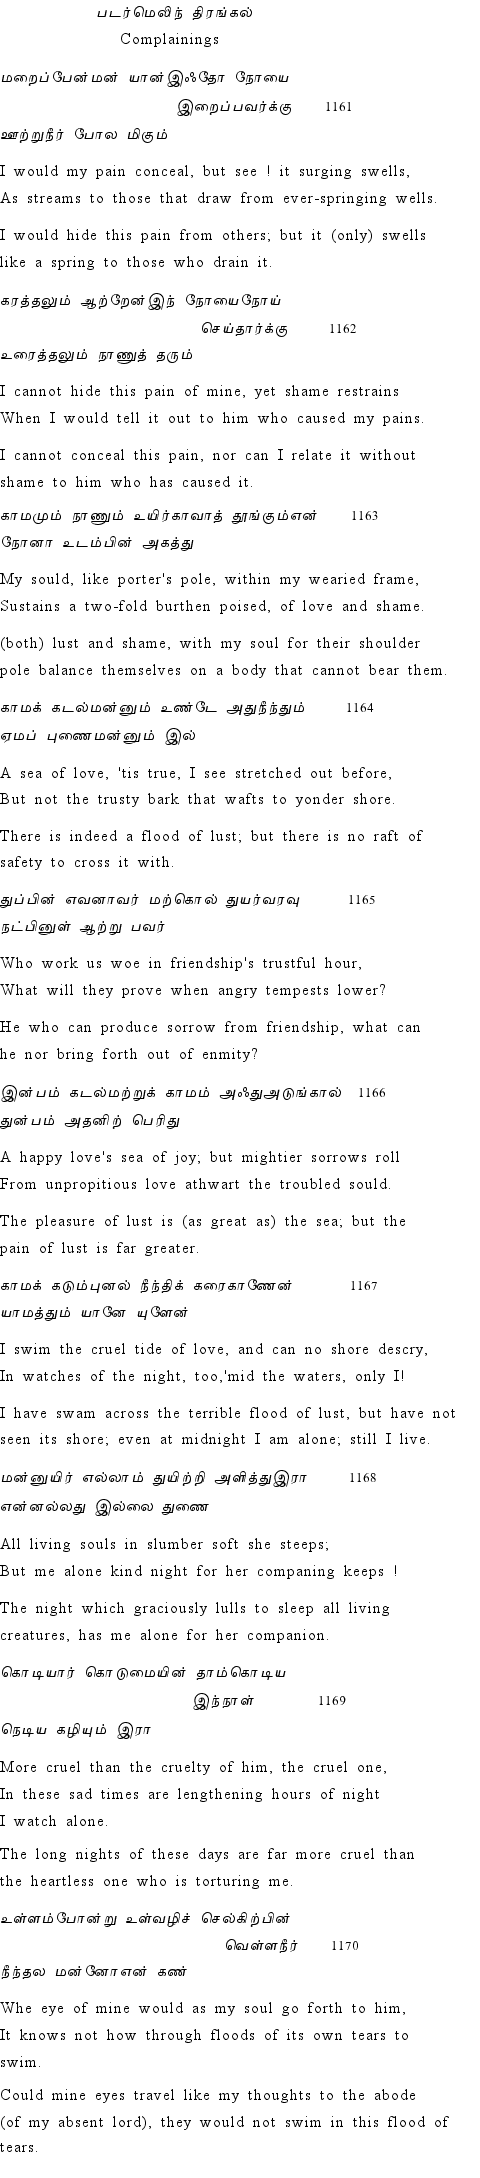 Text of Adhikaram 117